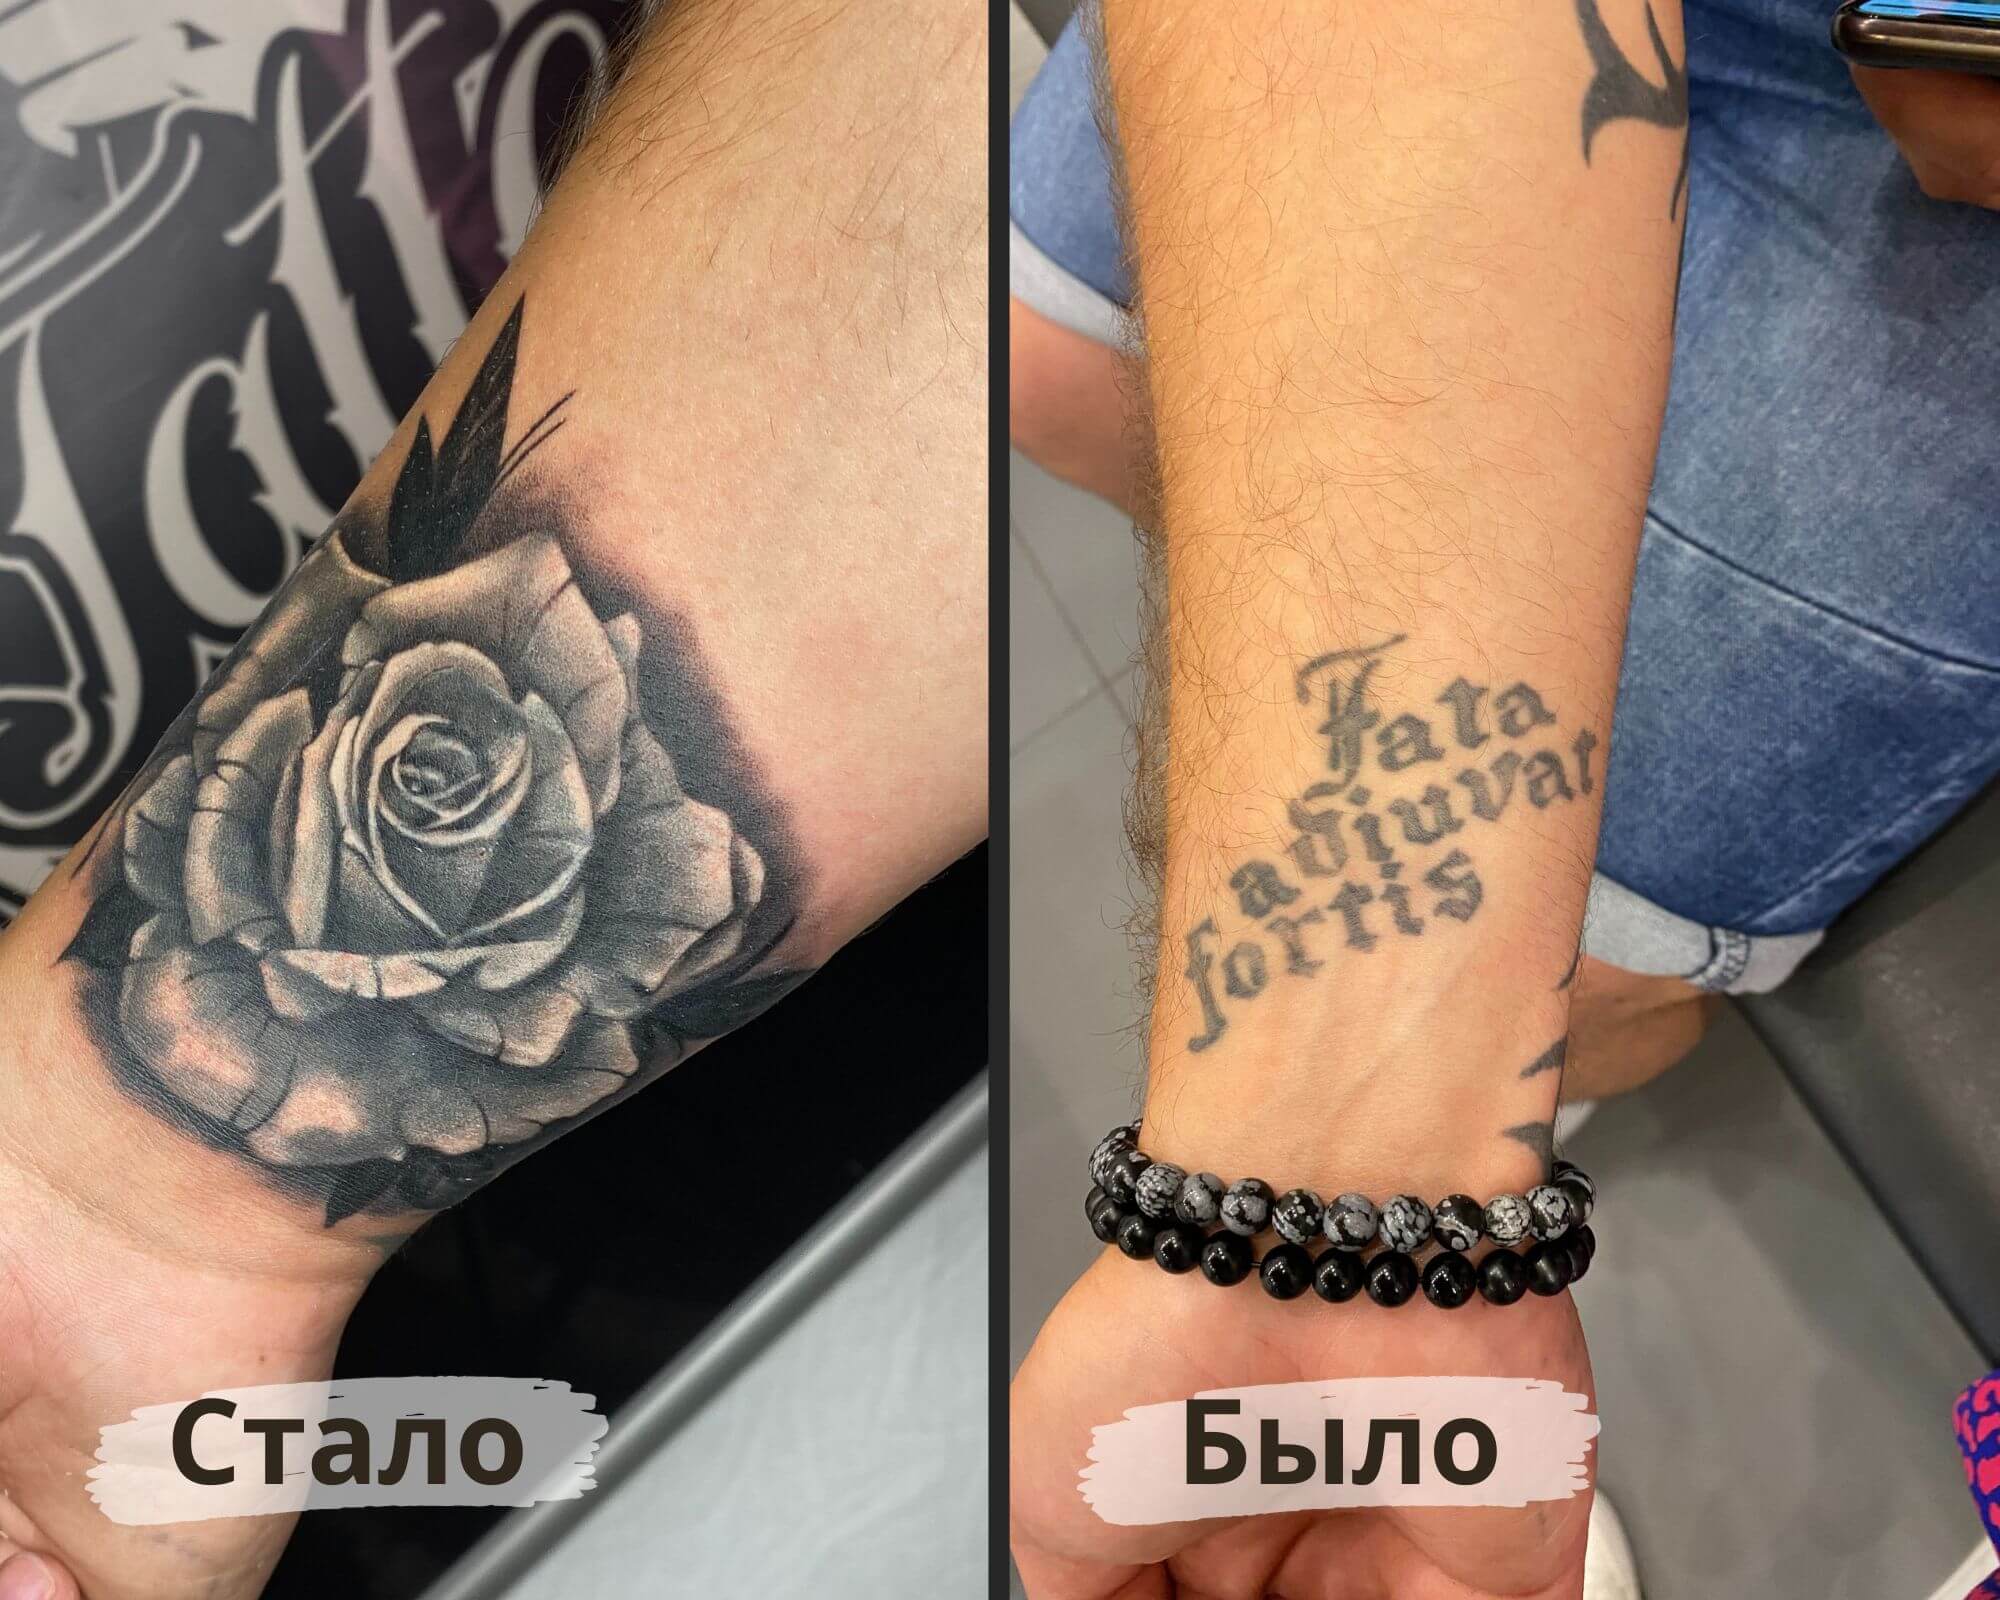 Фото до и после перекрытой татуировки